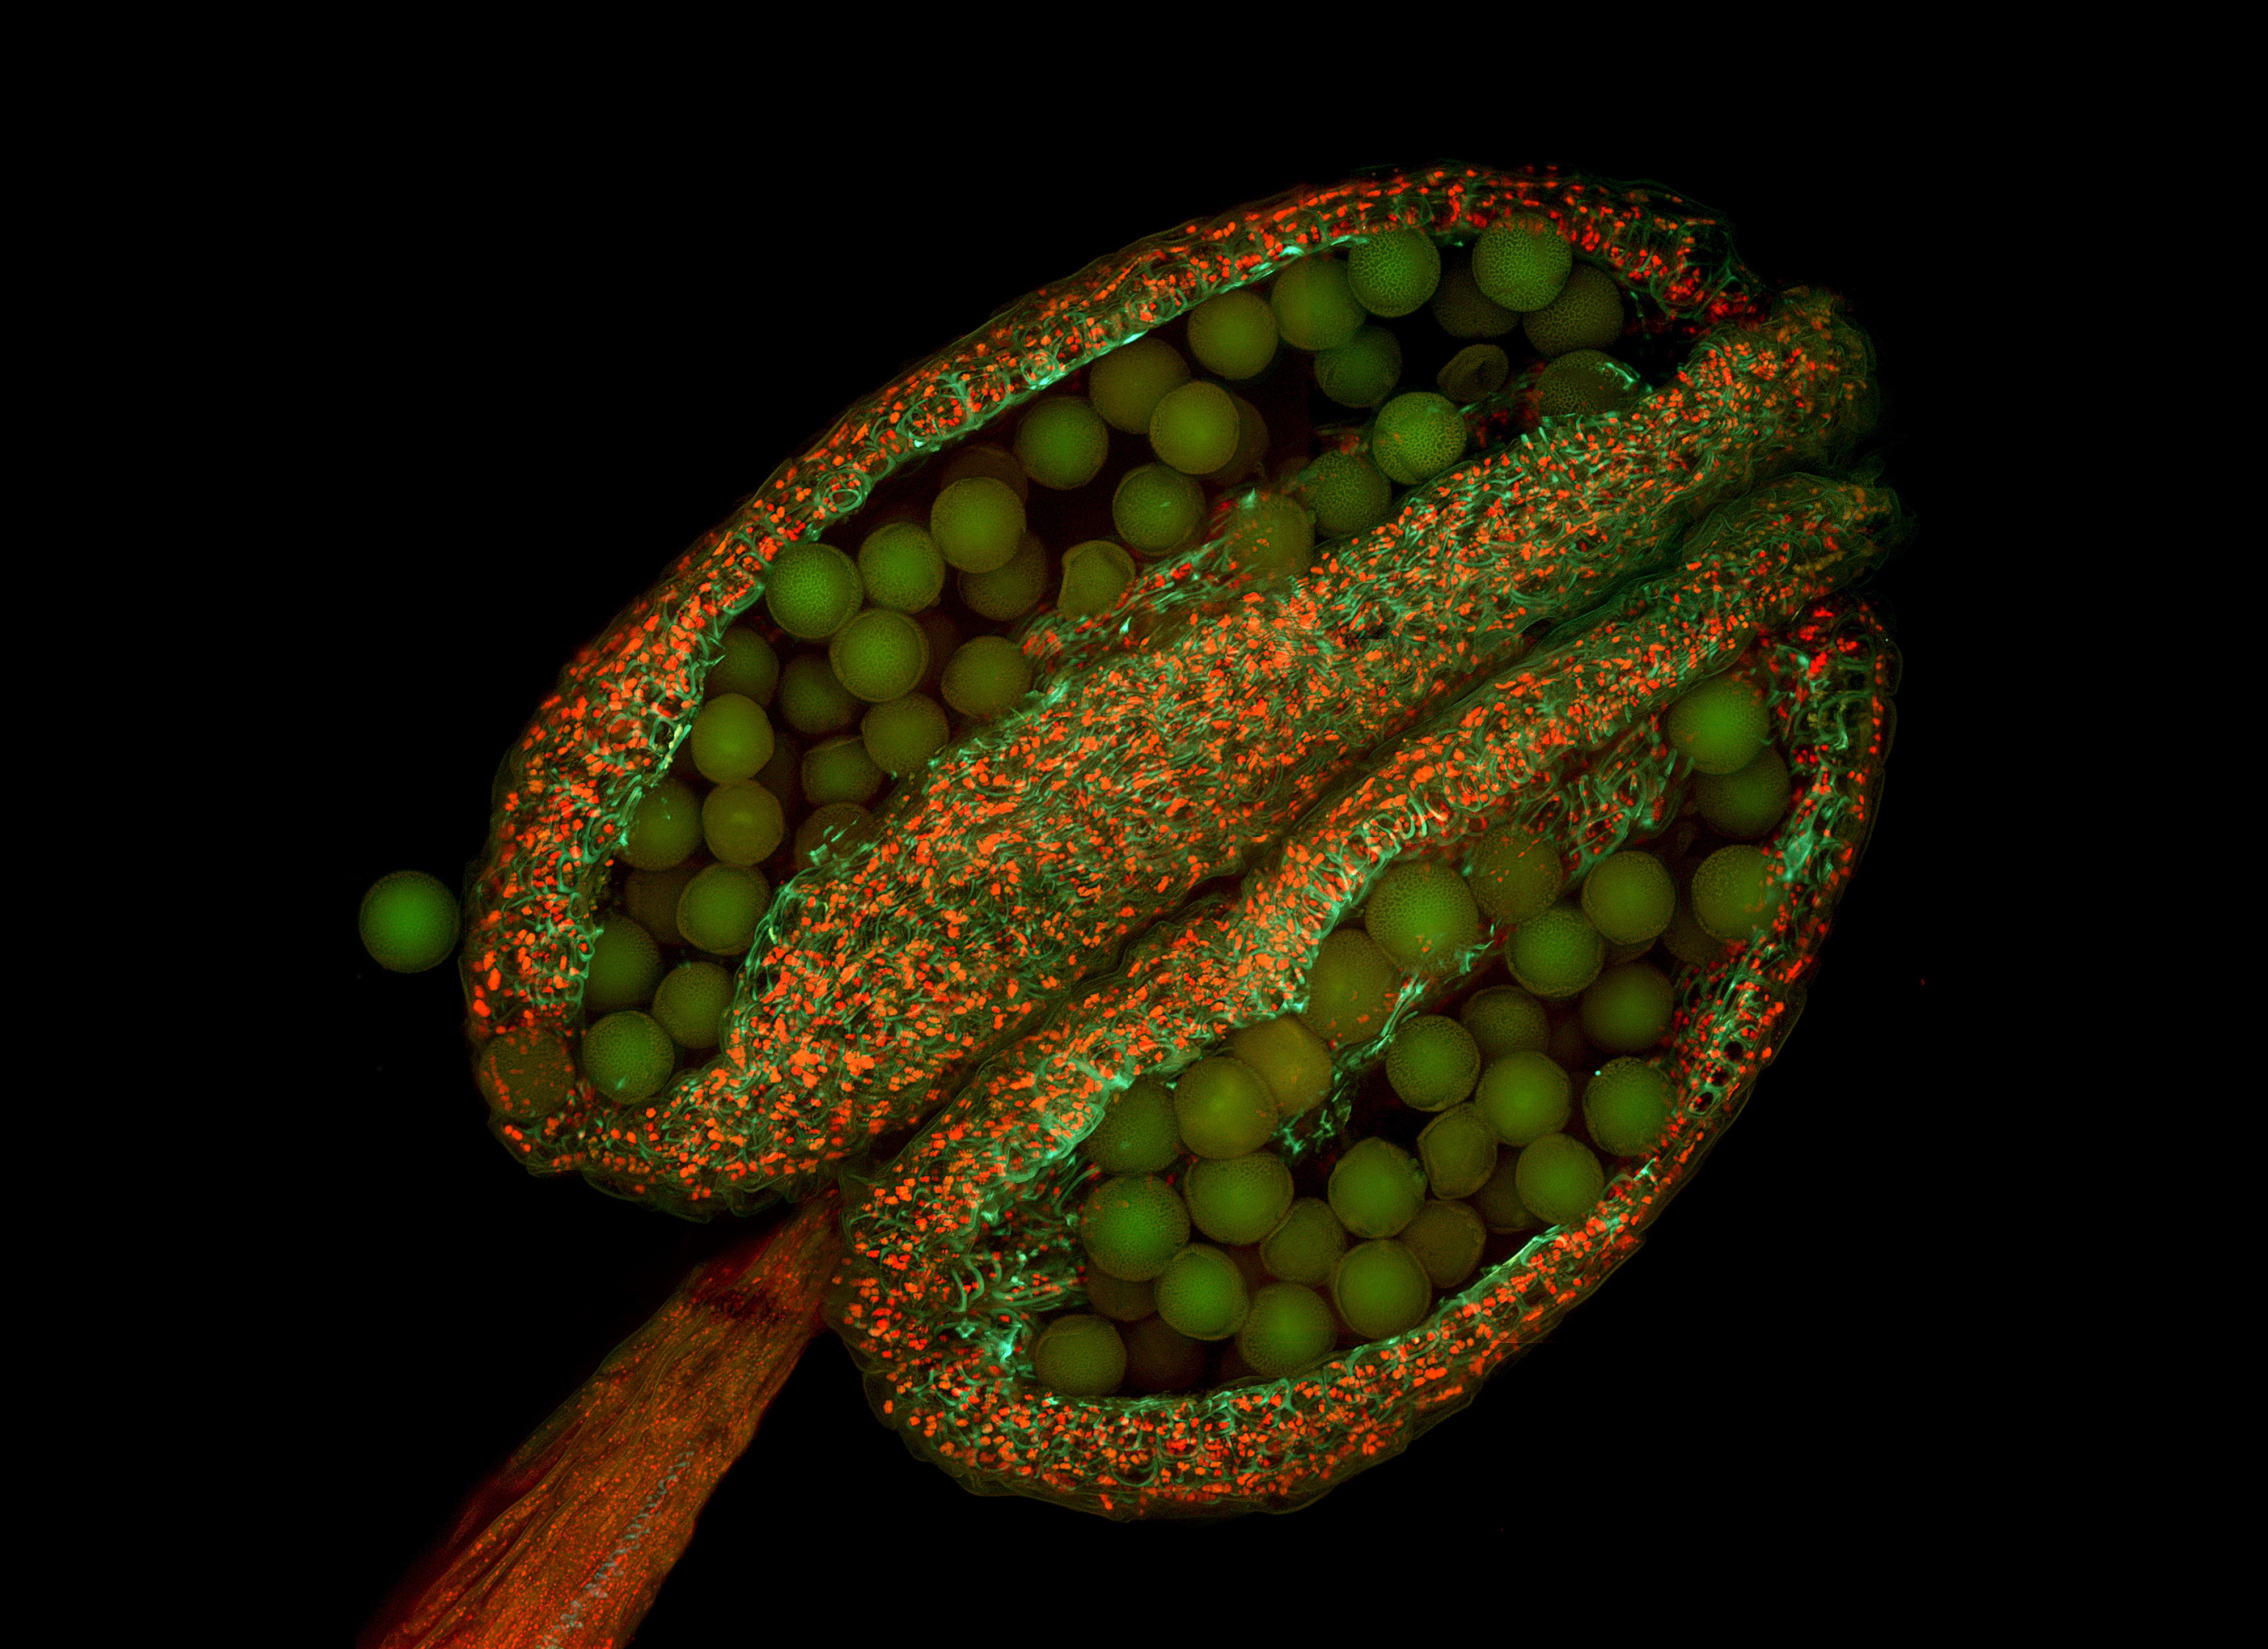 Пыльца и споры. Пыльца цветковых растений под микроскопом. Пыльца микрофотографии. Пыльца цветкового растения под микроскопом. Микрофотография пыльцы покрытосеменных.